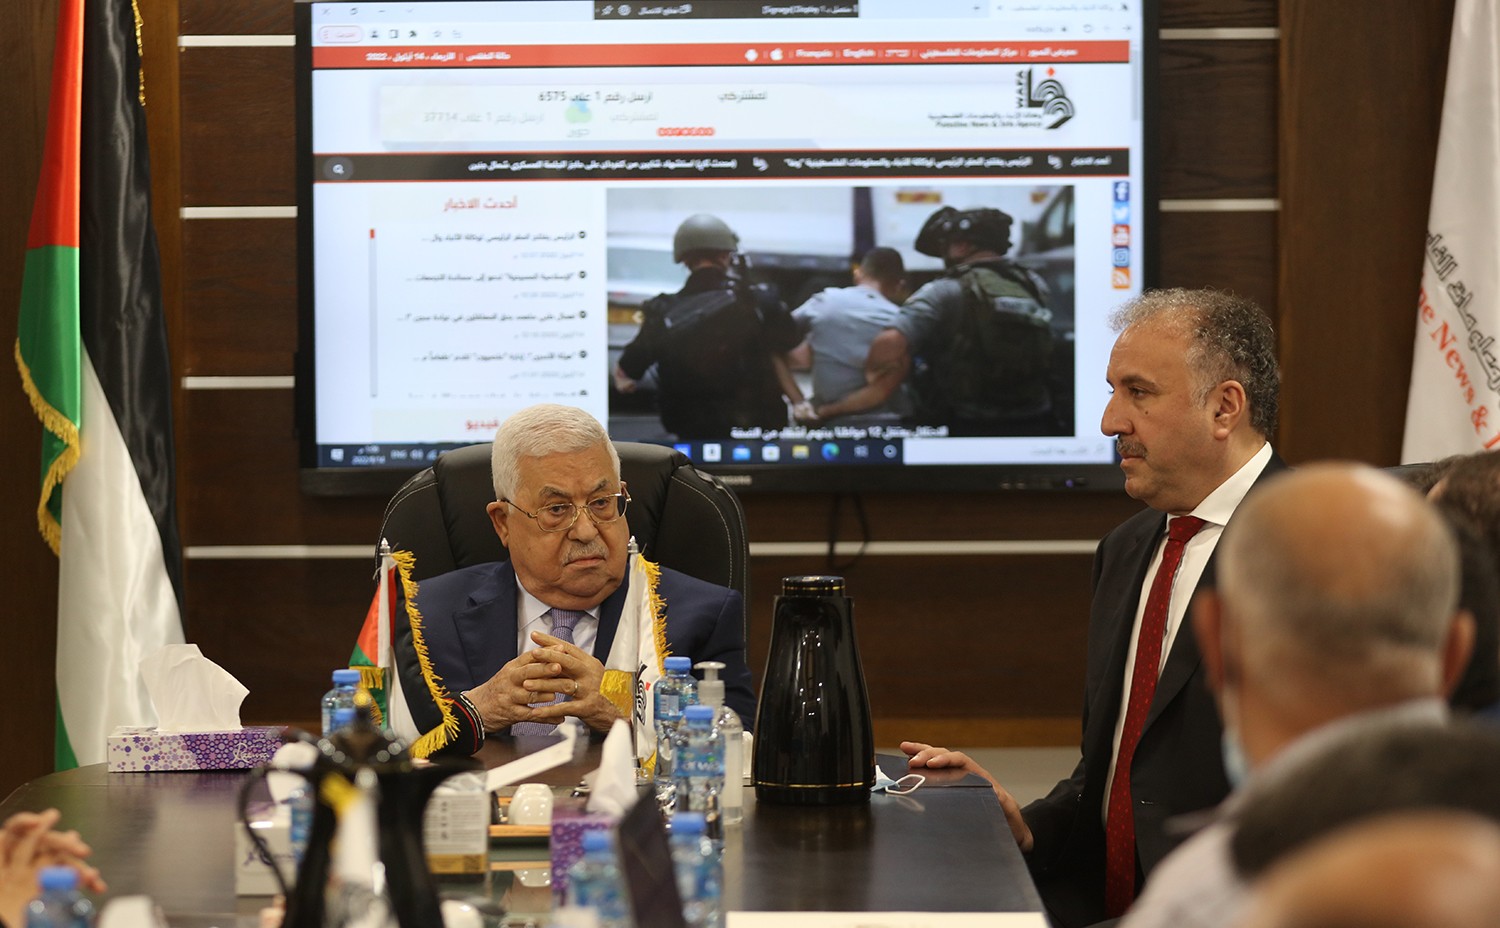 رام الله - الرئيس محمود عباس، يفتتح المقر المؤقت لوكالة الانباء والمعلومات الفلسطينية - وفا 12.jpg